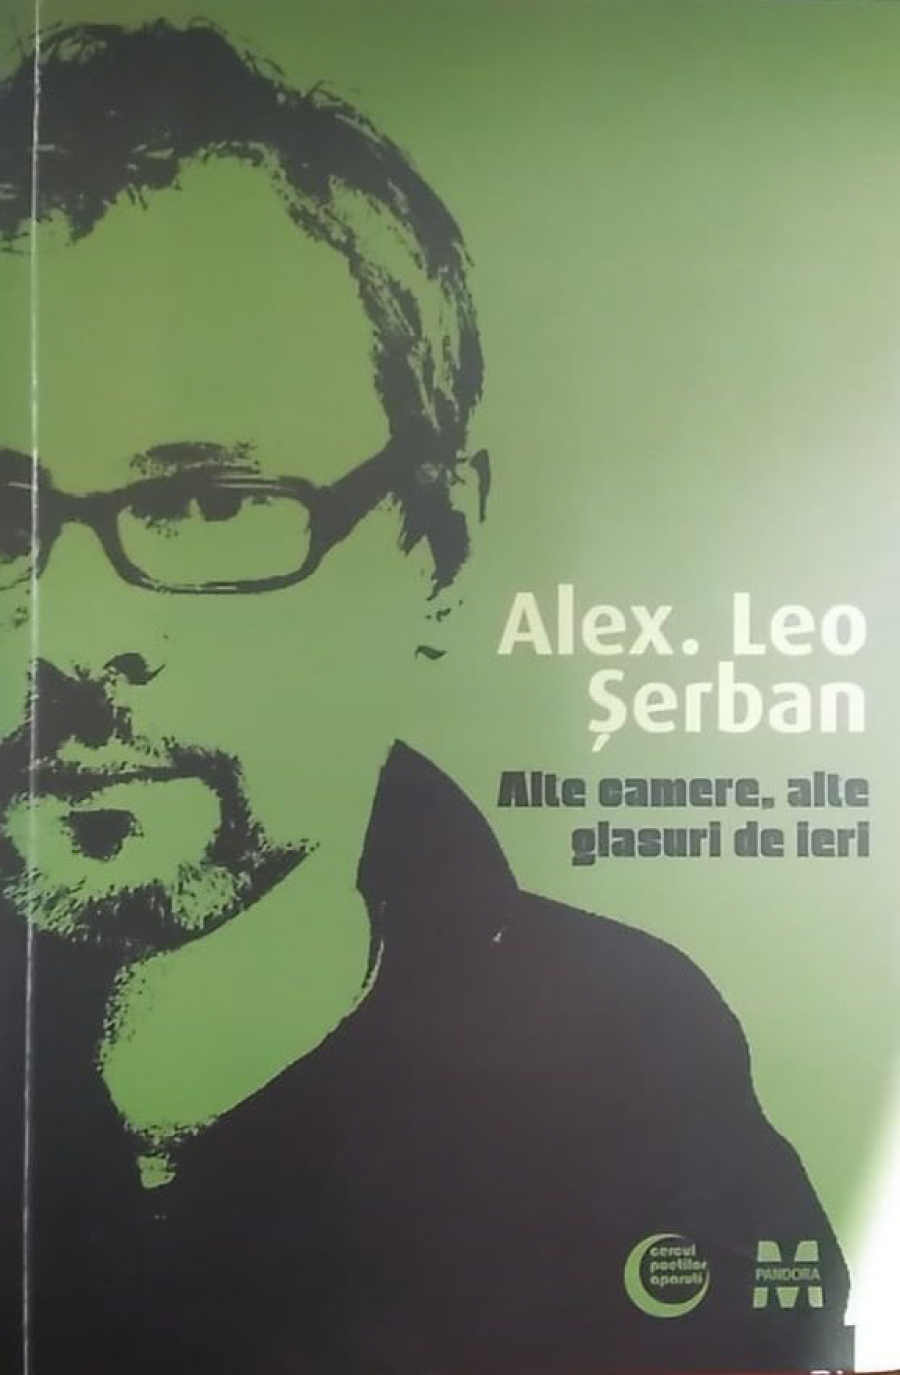 CRONICĂ DE CARTE | Alex Leo Șerban - un poet care nu trebuie uitat